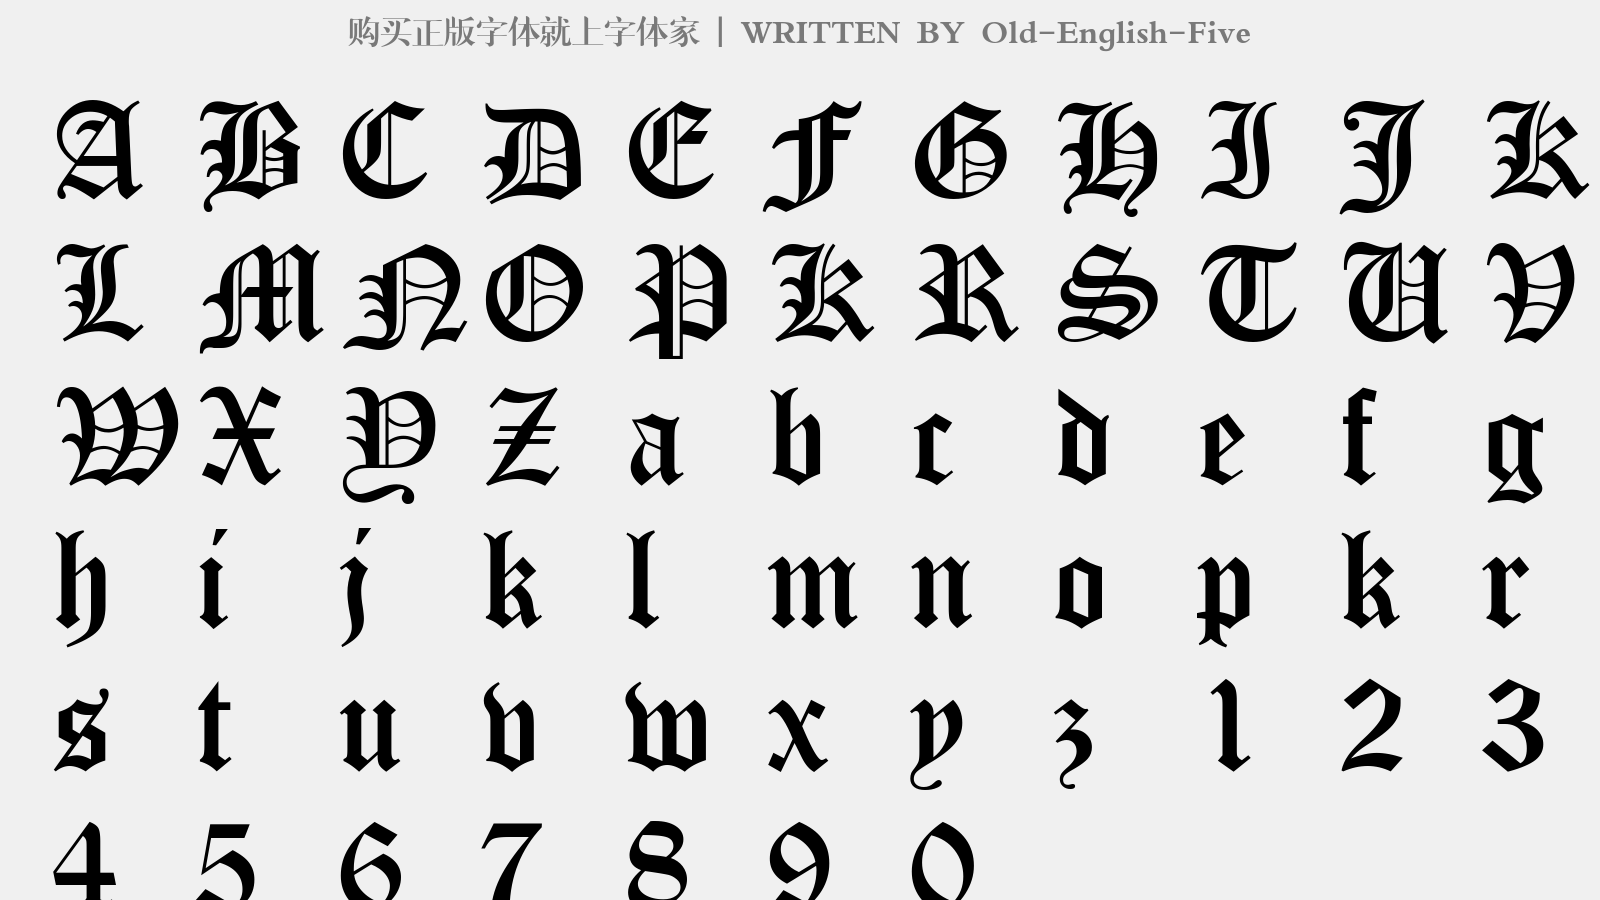 英国贵族字体英文字体图片